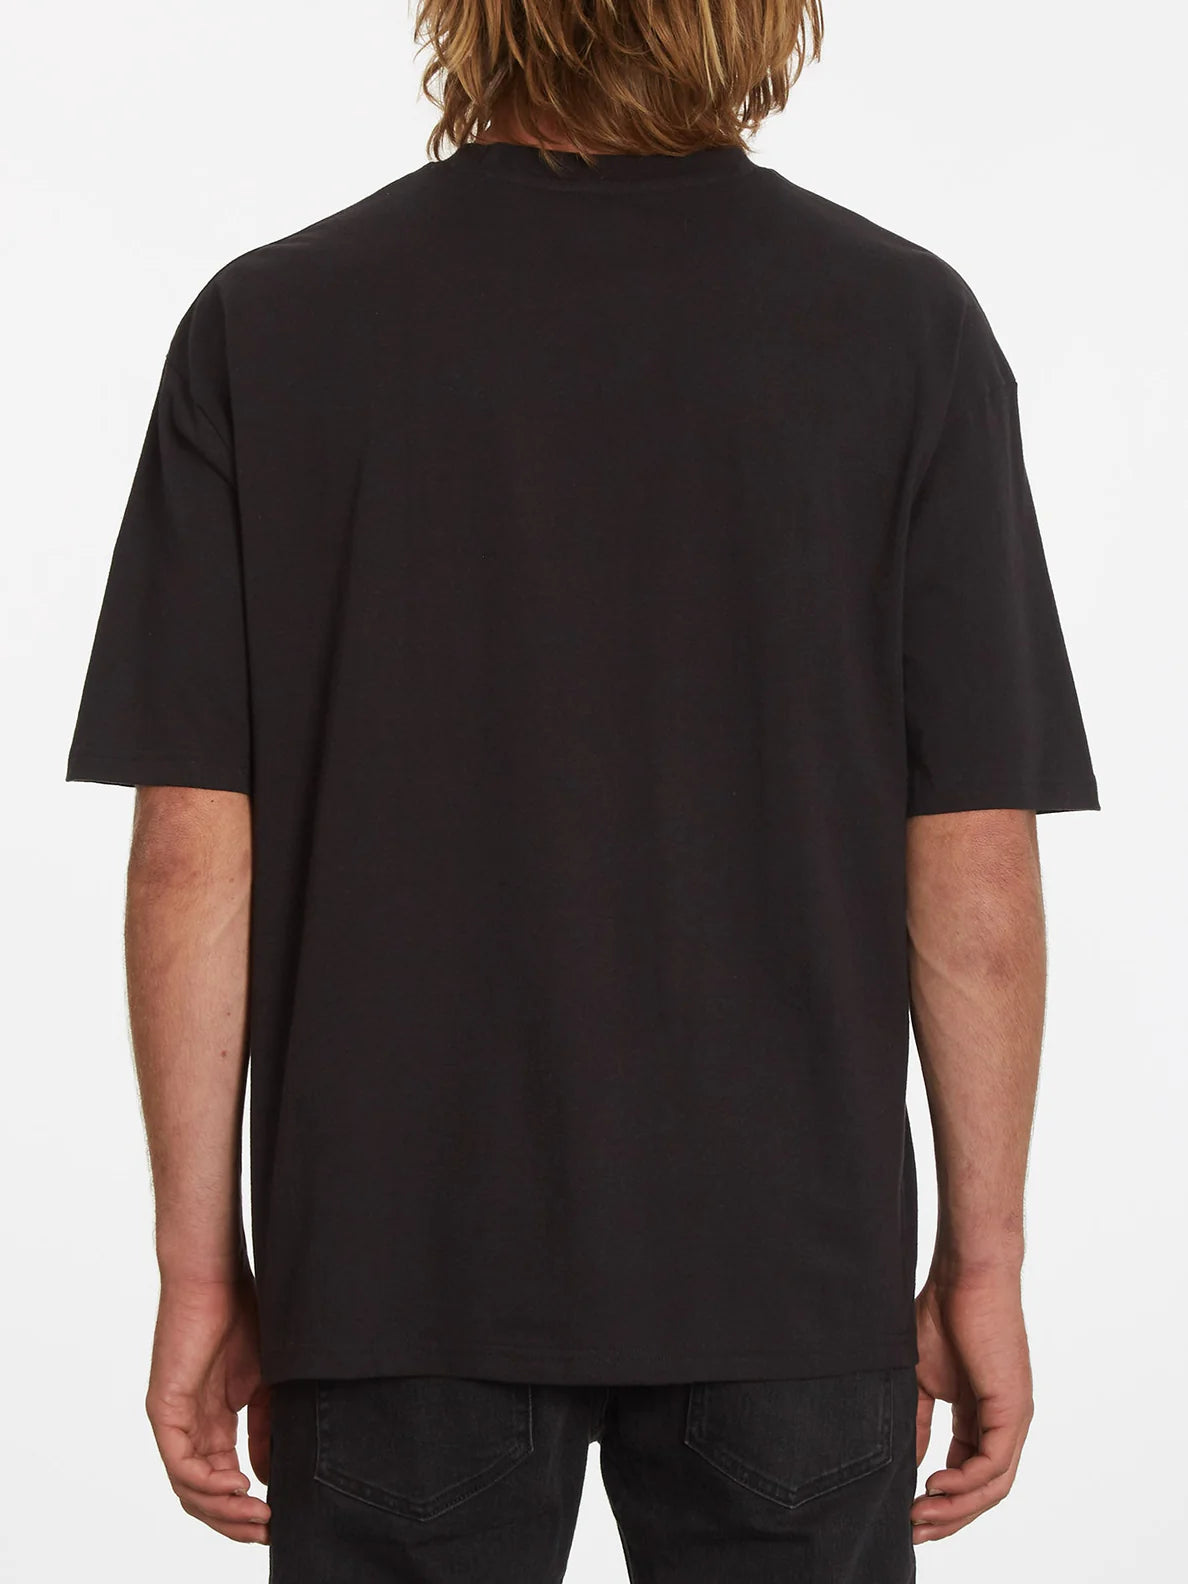 Camiseta Volcom Shredead Black | Camisetas de hombre | Camisetas manga corta de hombre | Volcom Shop | surfdevils.com